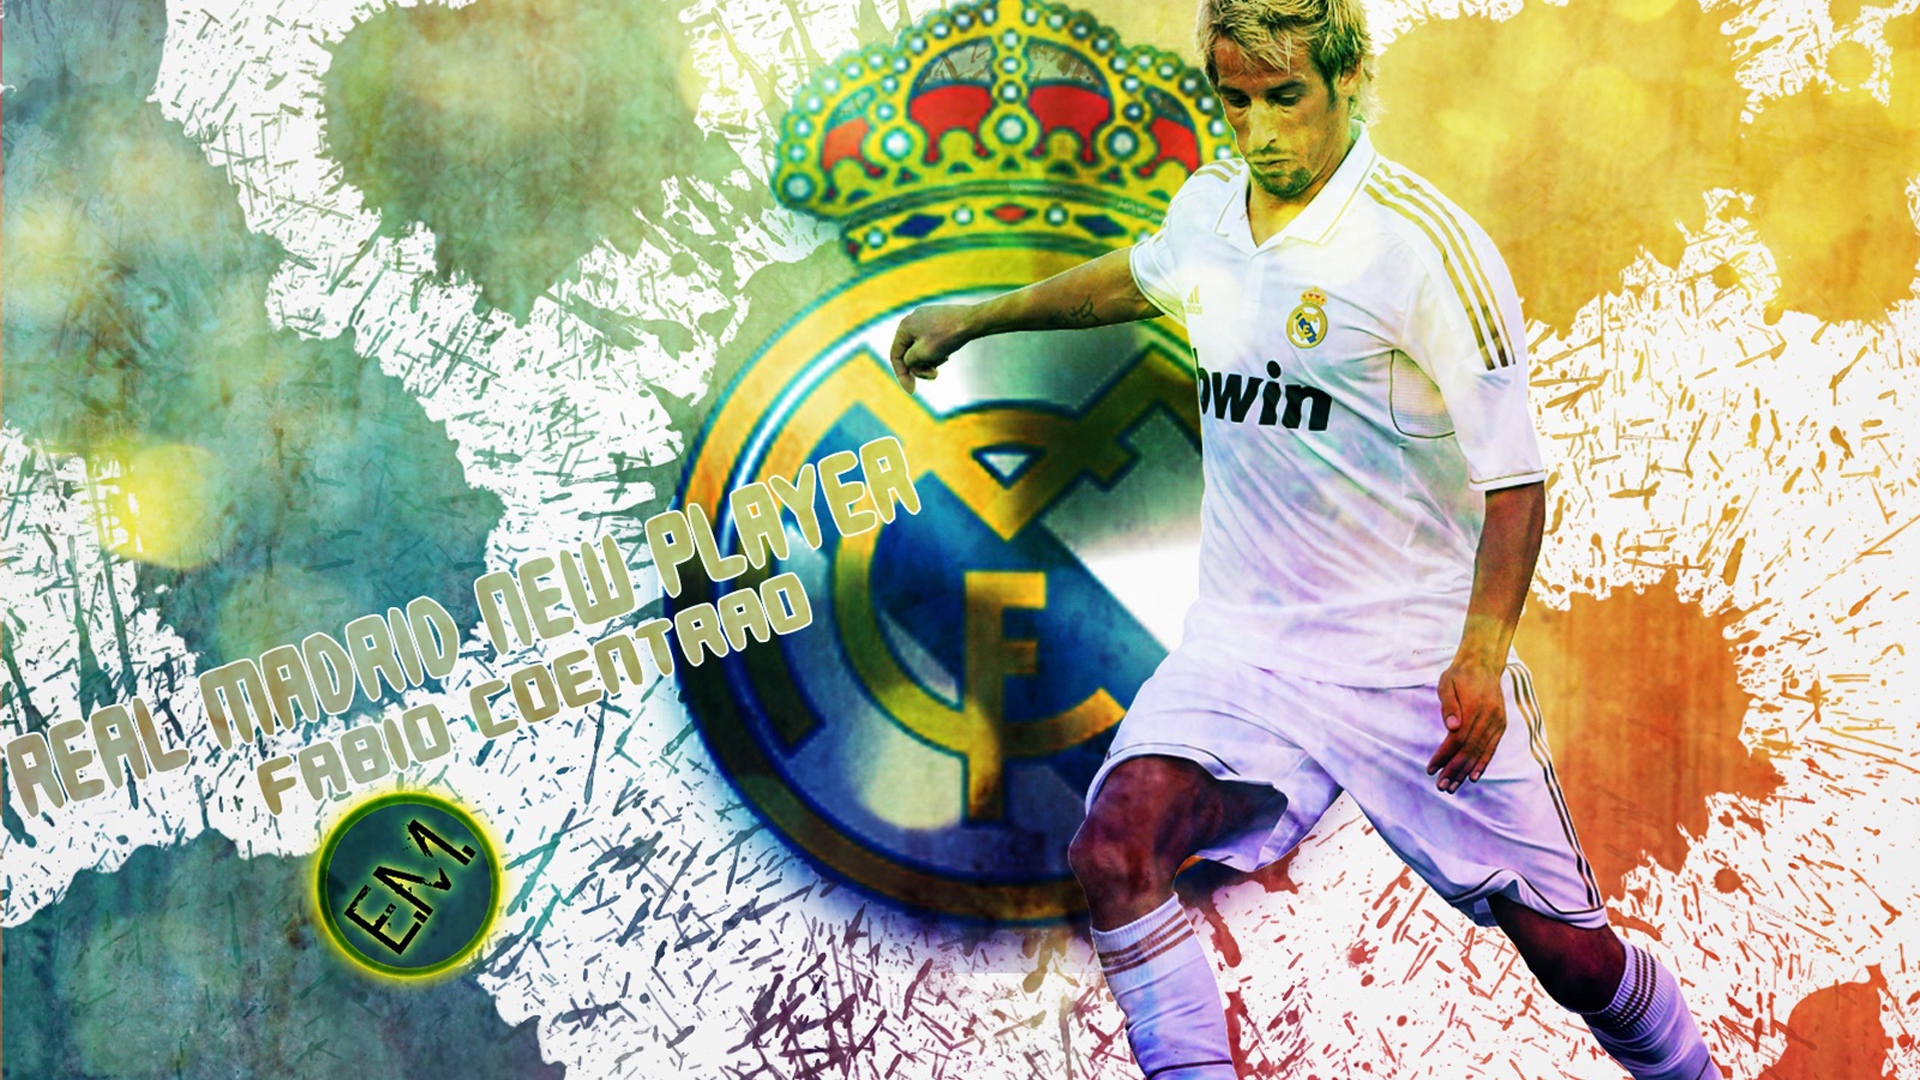 The new player of Real Madrid Fábio Coentrão